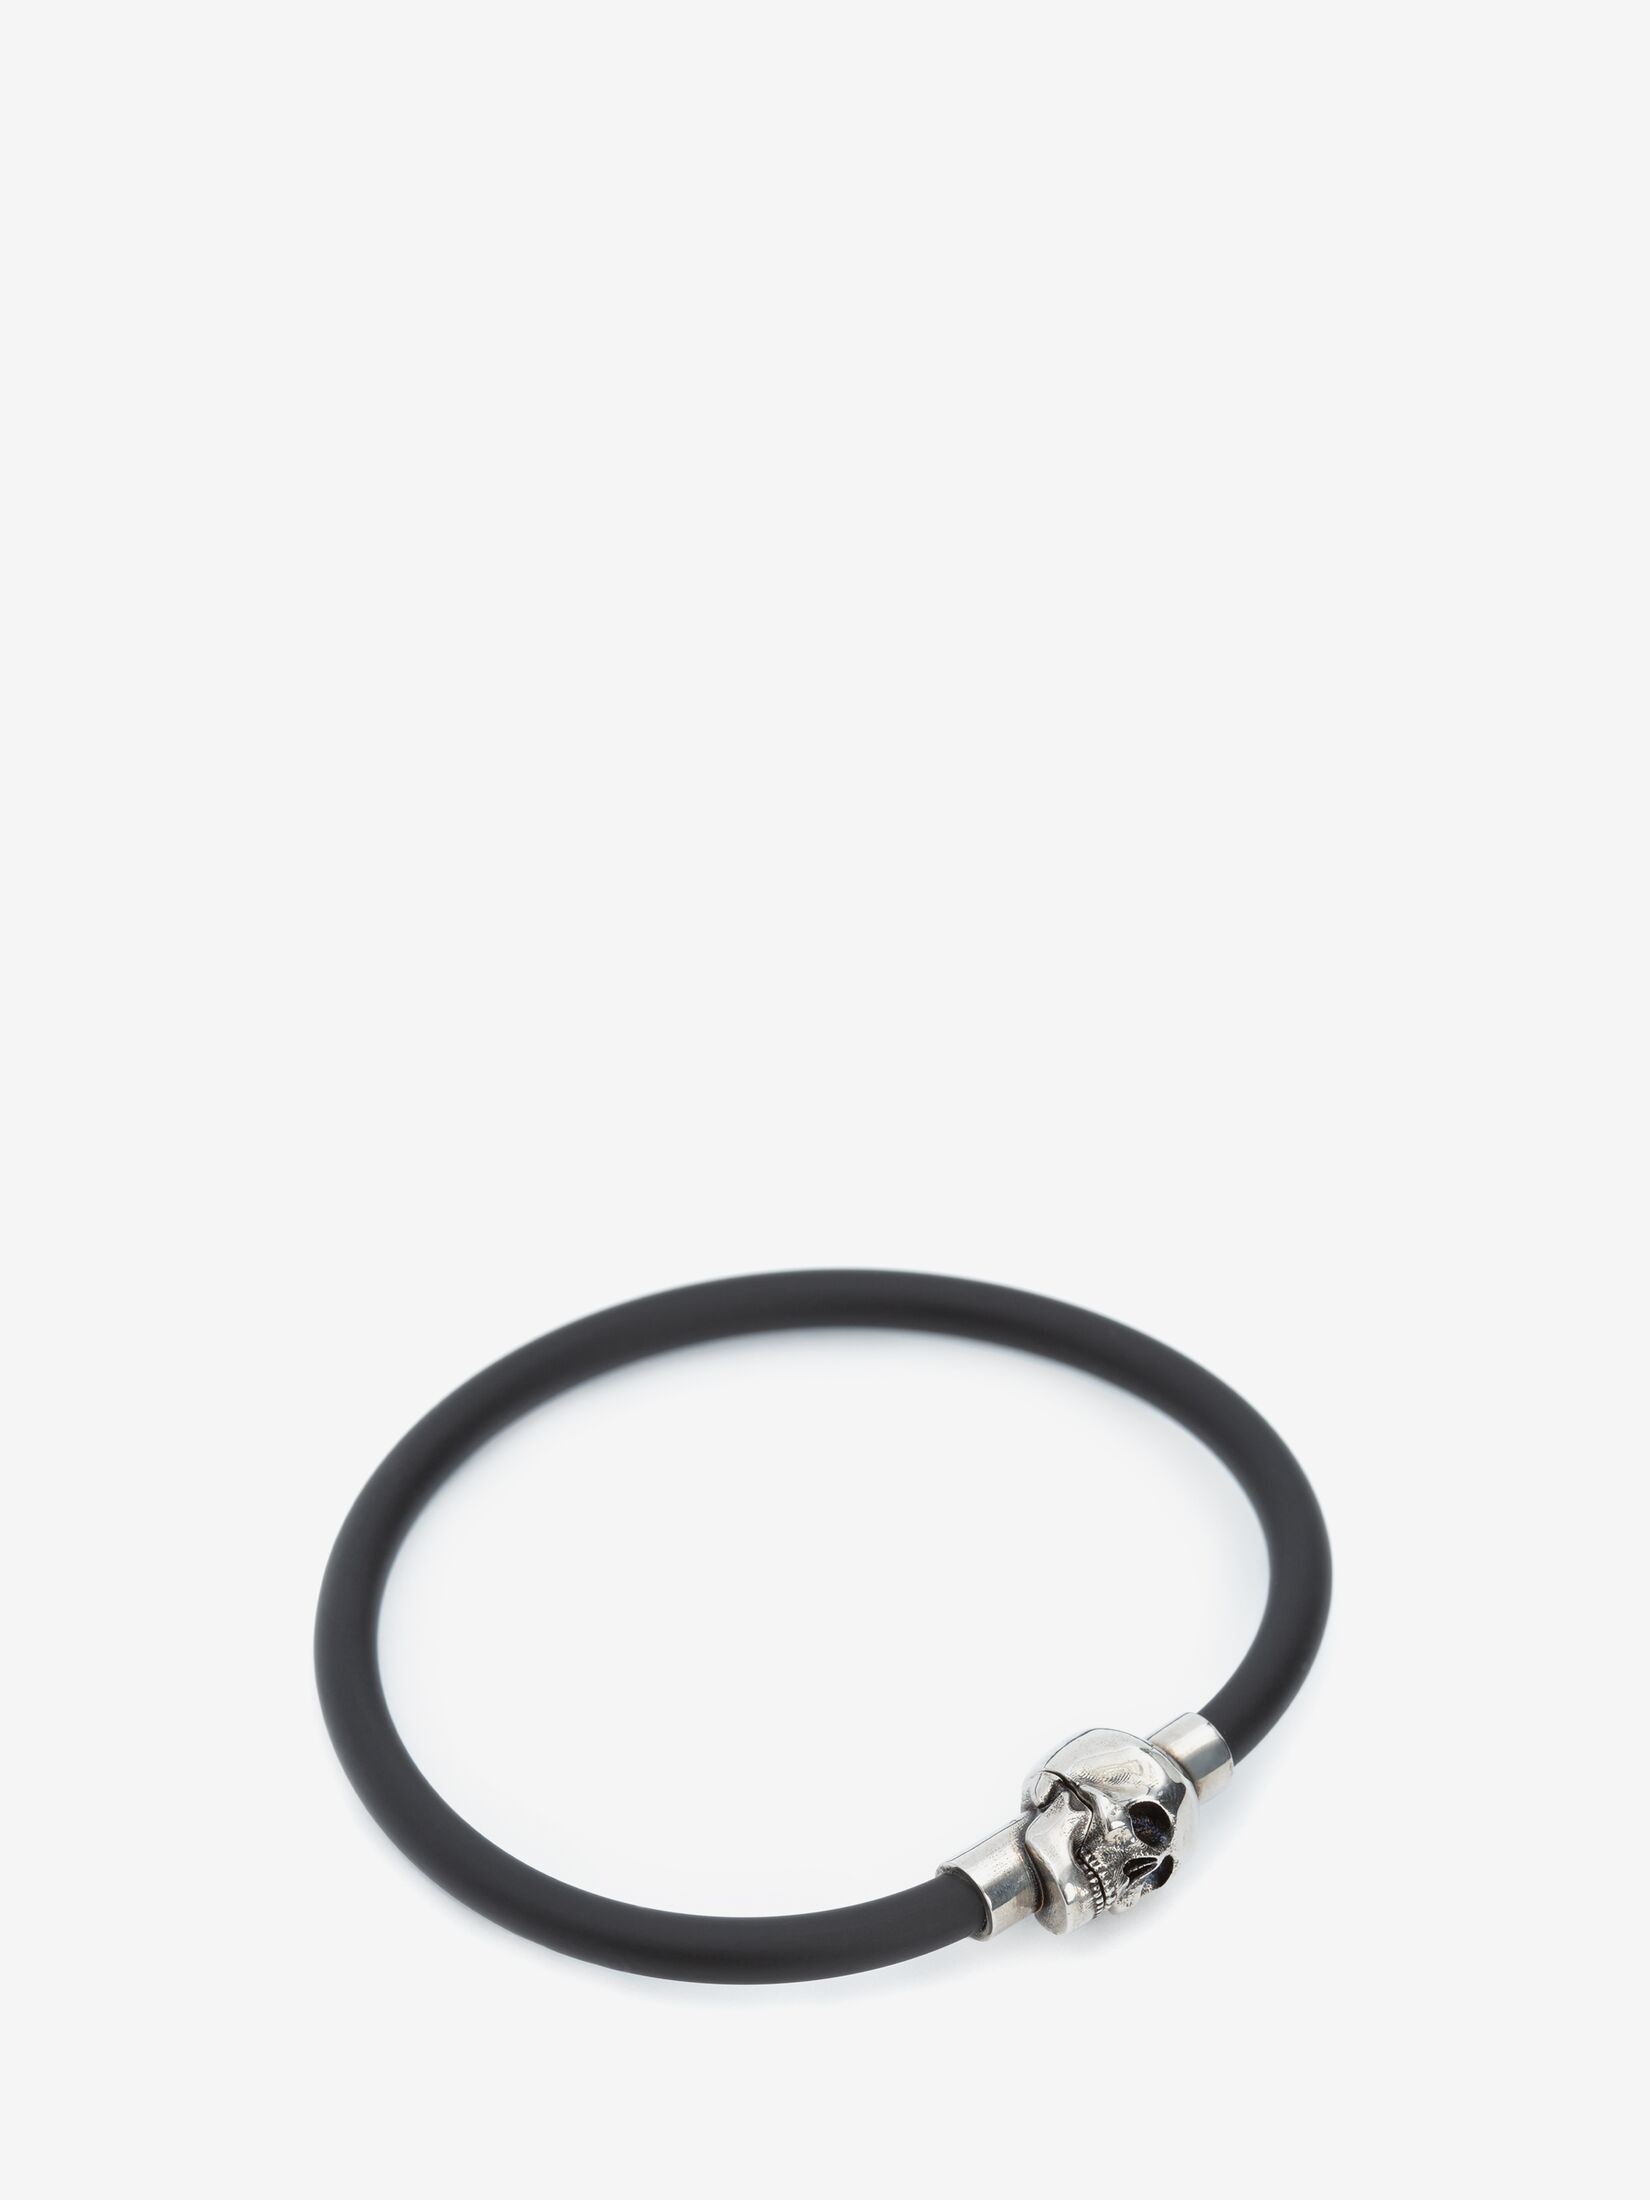 Rubber cord Skull Bracelet